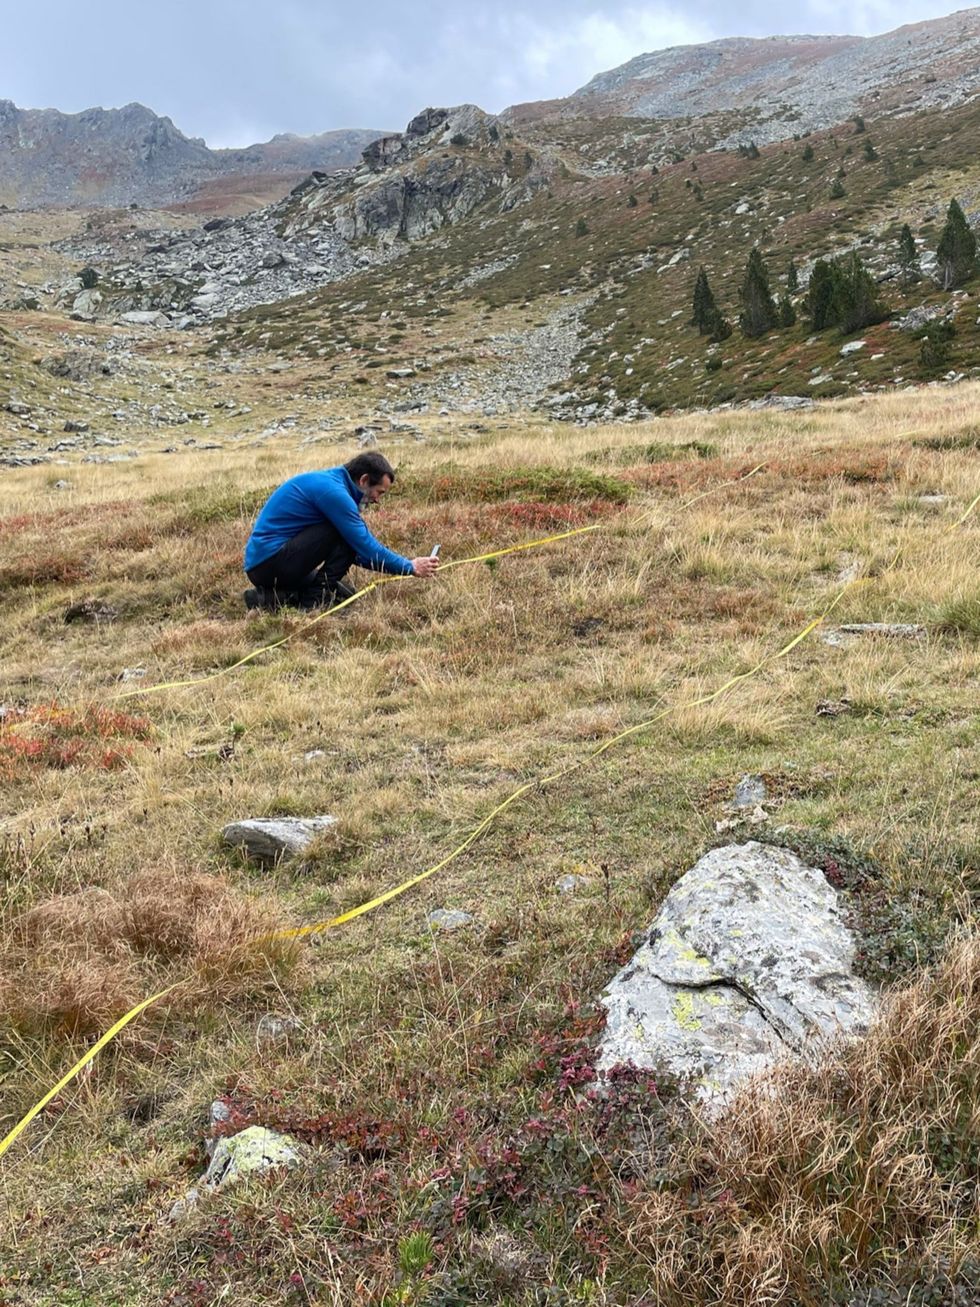 In de vallei van de rivier de Rialb een populaire bergwandelbestemming meet hoofdonderzoeker Bernat ClaramuntLpez zaailingen op om de groei van zwarte en grove dennen op verschillende hoogten in de vallei te kunnen beoordelen